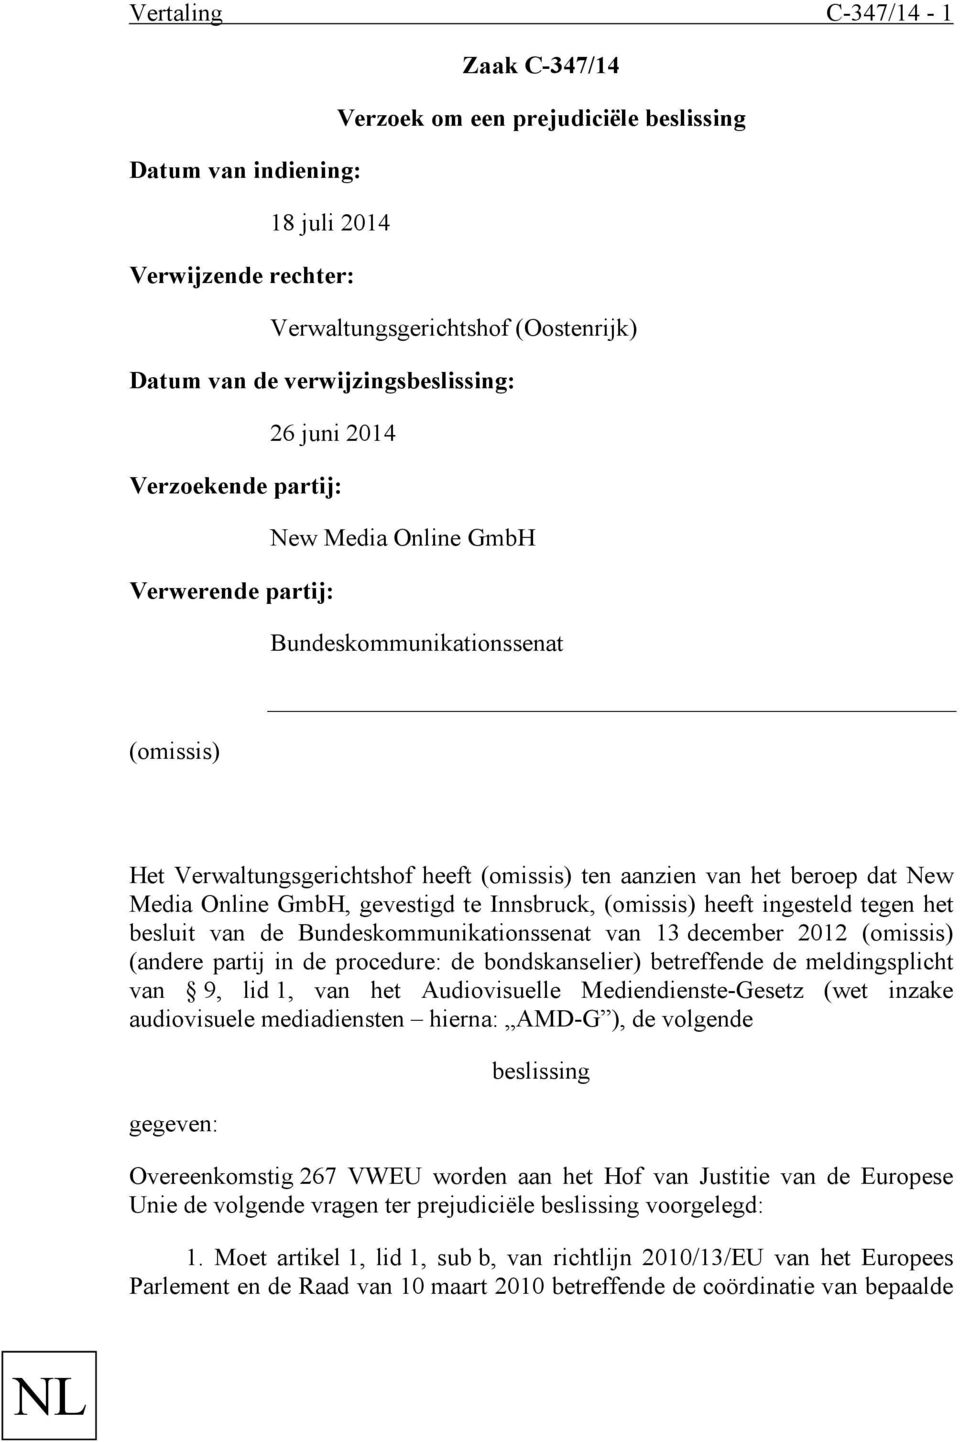 beroep dat New Media Online GmbH, gevestigd te Innsbruck, (omissis) heeft ingesteld tegen het besluit van de Bundeskommunikationssenat van 13 december 2012 (omissis) (andere partij in de procedure: